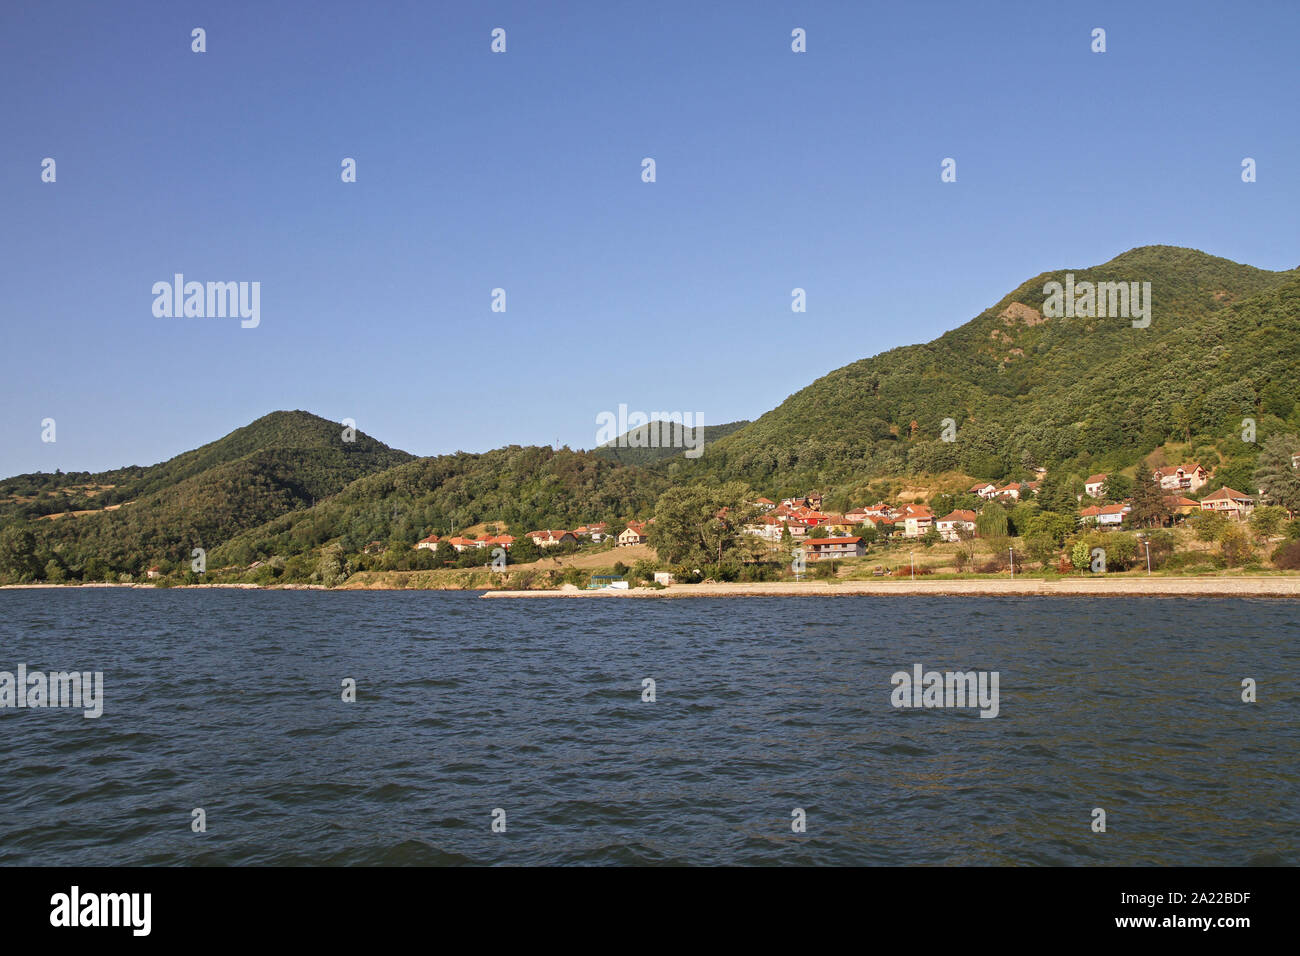 Blick auf die Siedlung in Eselnita am rumänischen Donauufer, Grenze zwischen Rumänien und Serbien, Eselnita, Rumänien. Stockfoto